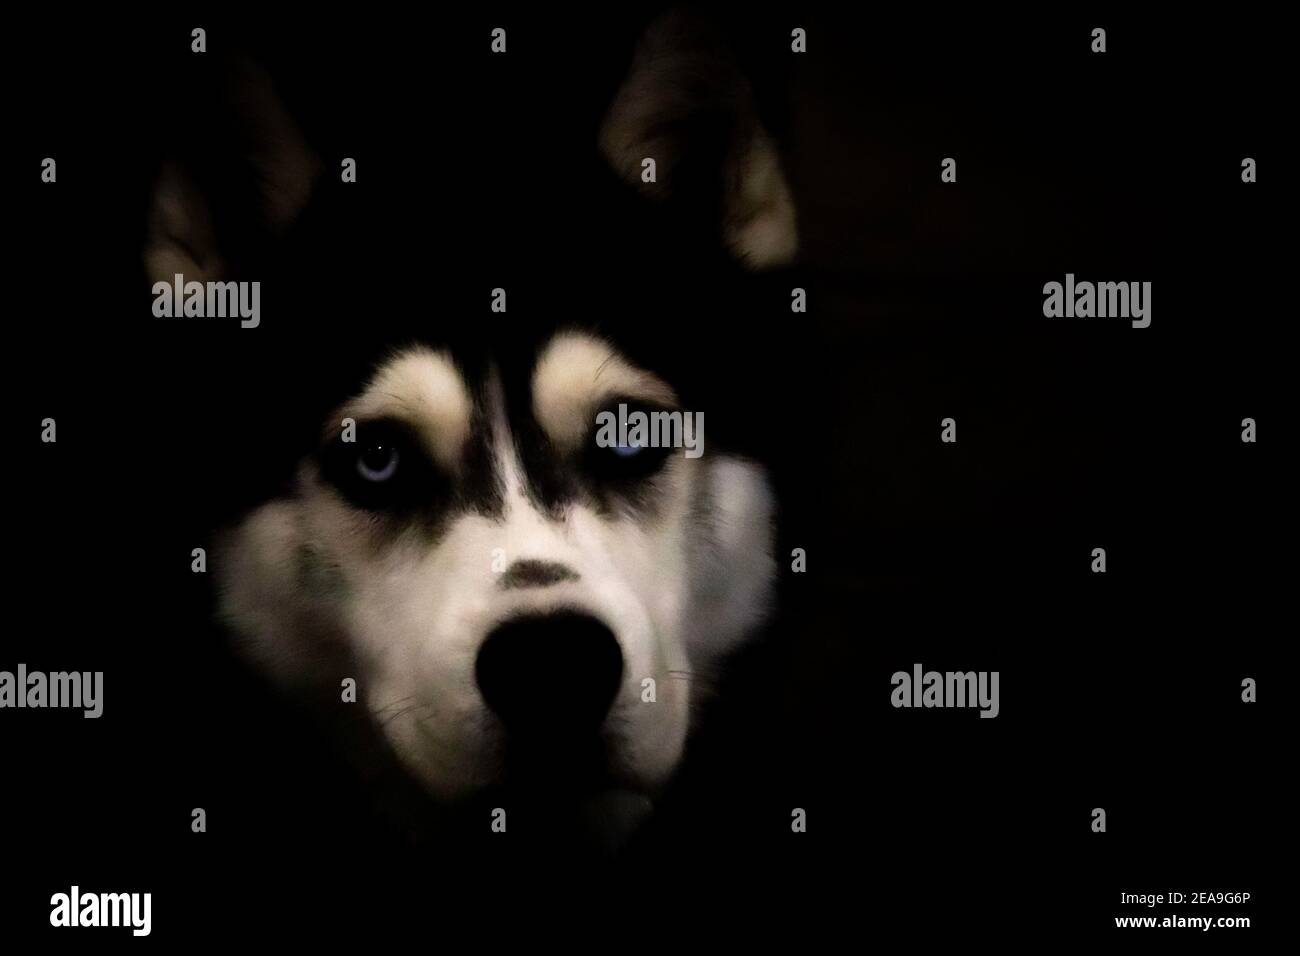 Colpo di testa di un cane Husky con uno sfondo molto scuro. Il bianco sul viso e gli occhi blu si distinguono davvero. Foto Stock